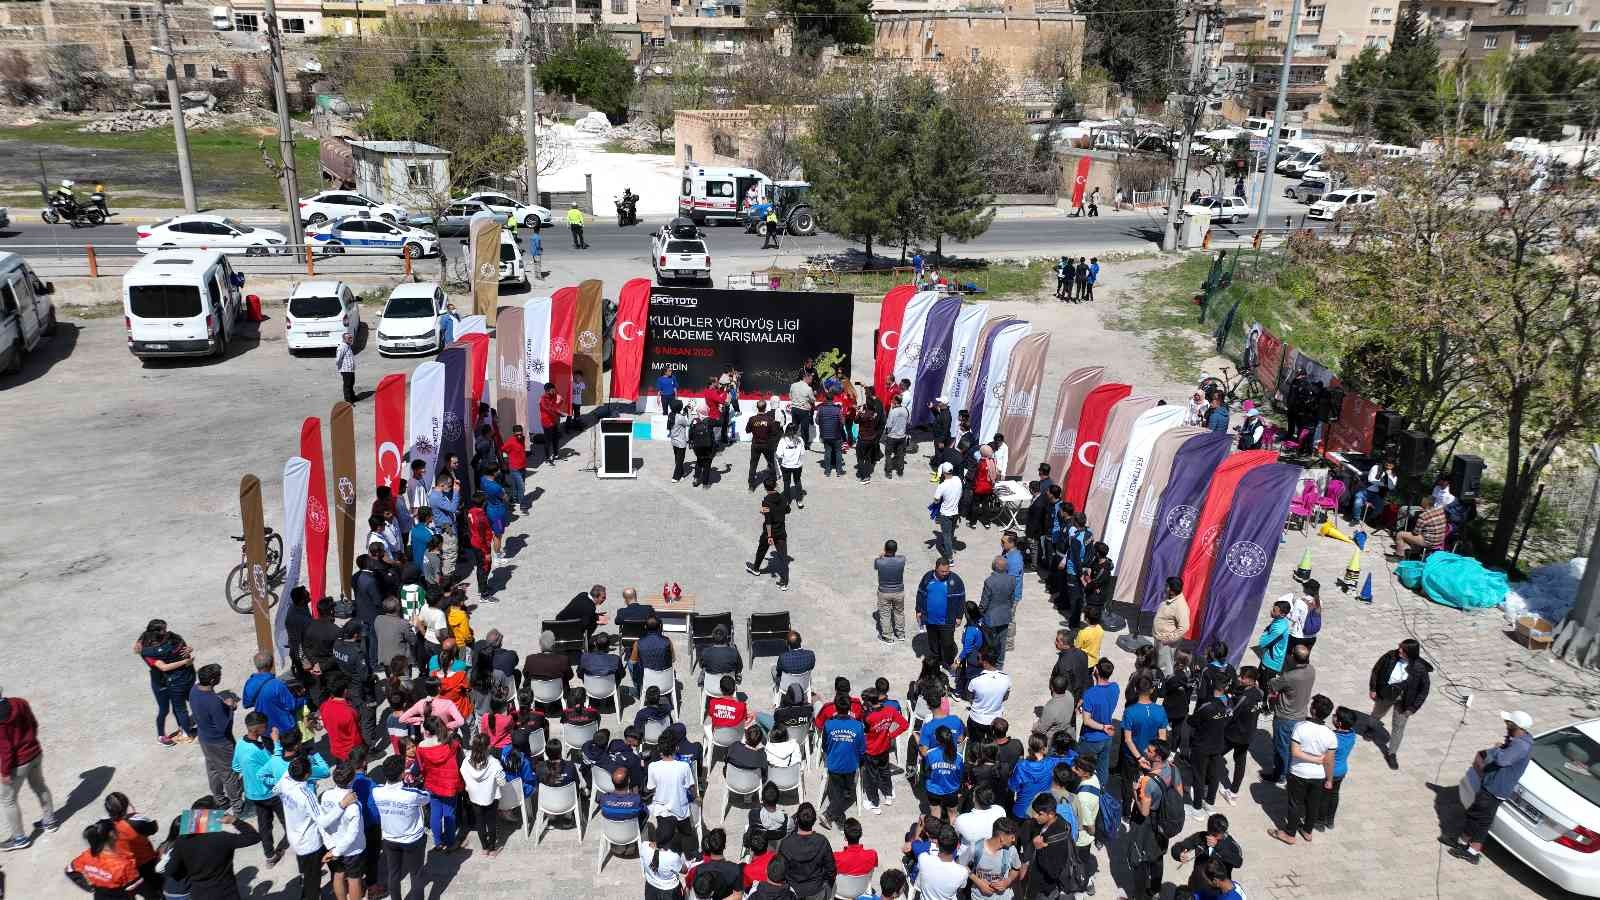 Spor Toto Kulüpler Yürüyüş Ligi yarışmalarının 1’inci kademesi Mardin’de gerçekleştirildi